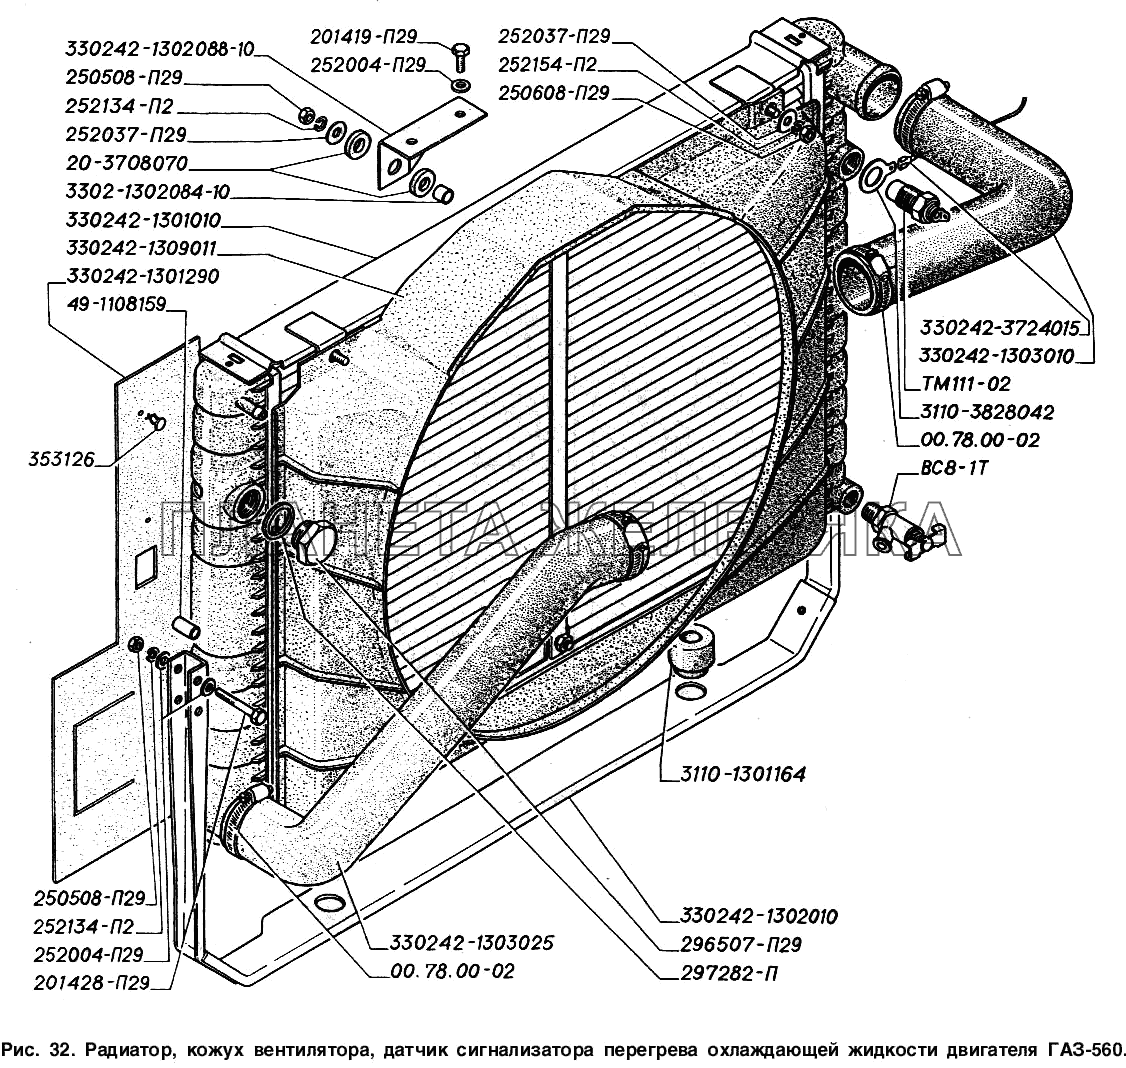 Радиатор, кожух вентилятора, датчик сигнализатора перегрева охлаждающей жидкости двигателя ГАЗ-560 ГАЗ-2217 (Соболь)